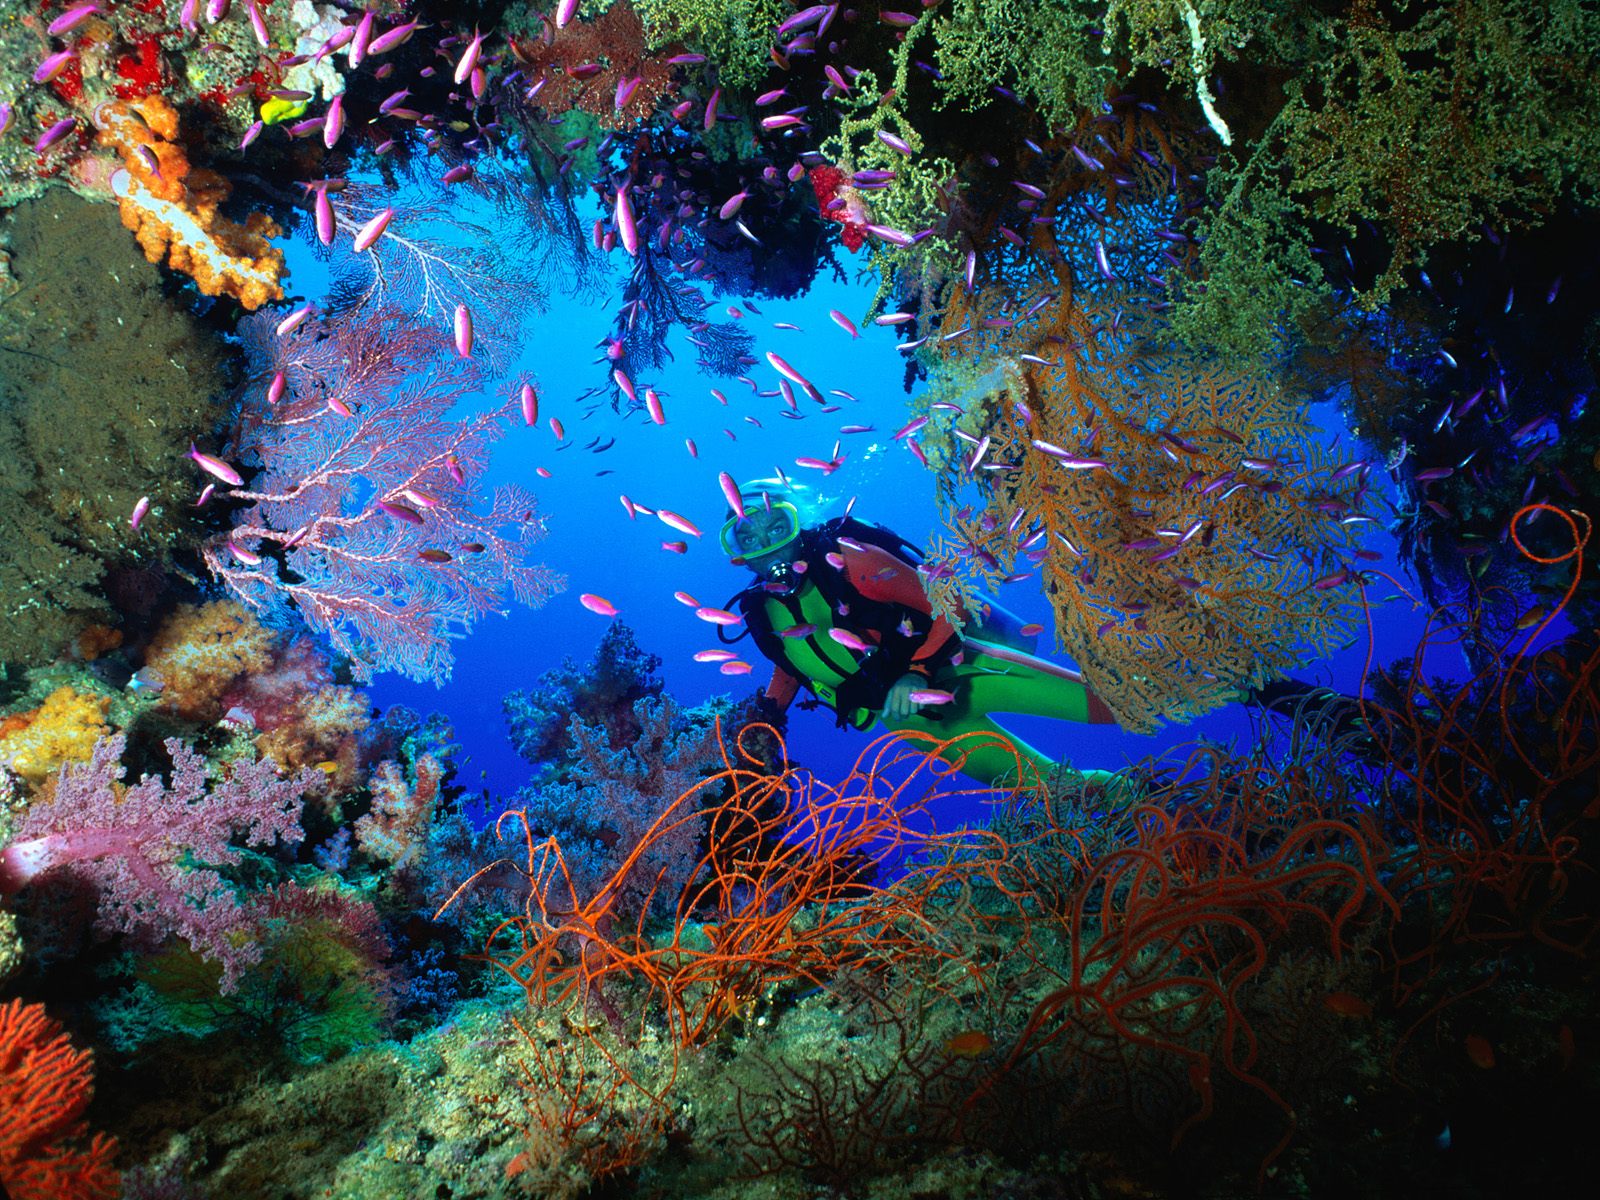 netrani deep sea diving destinations